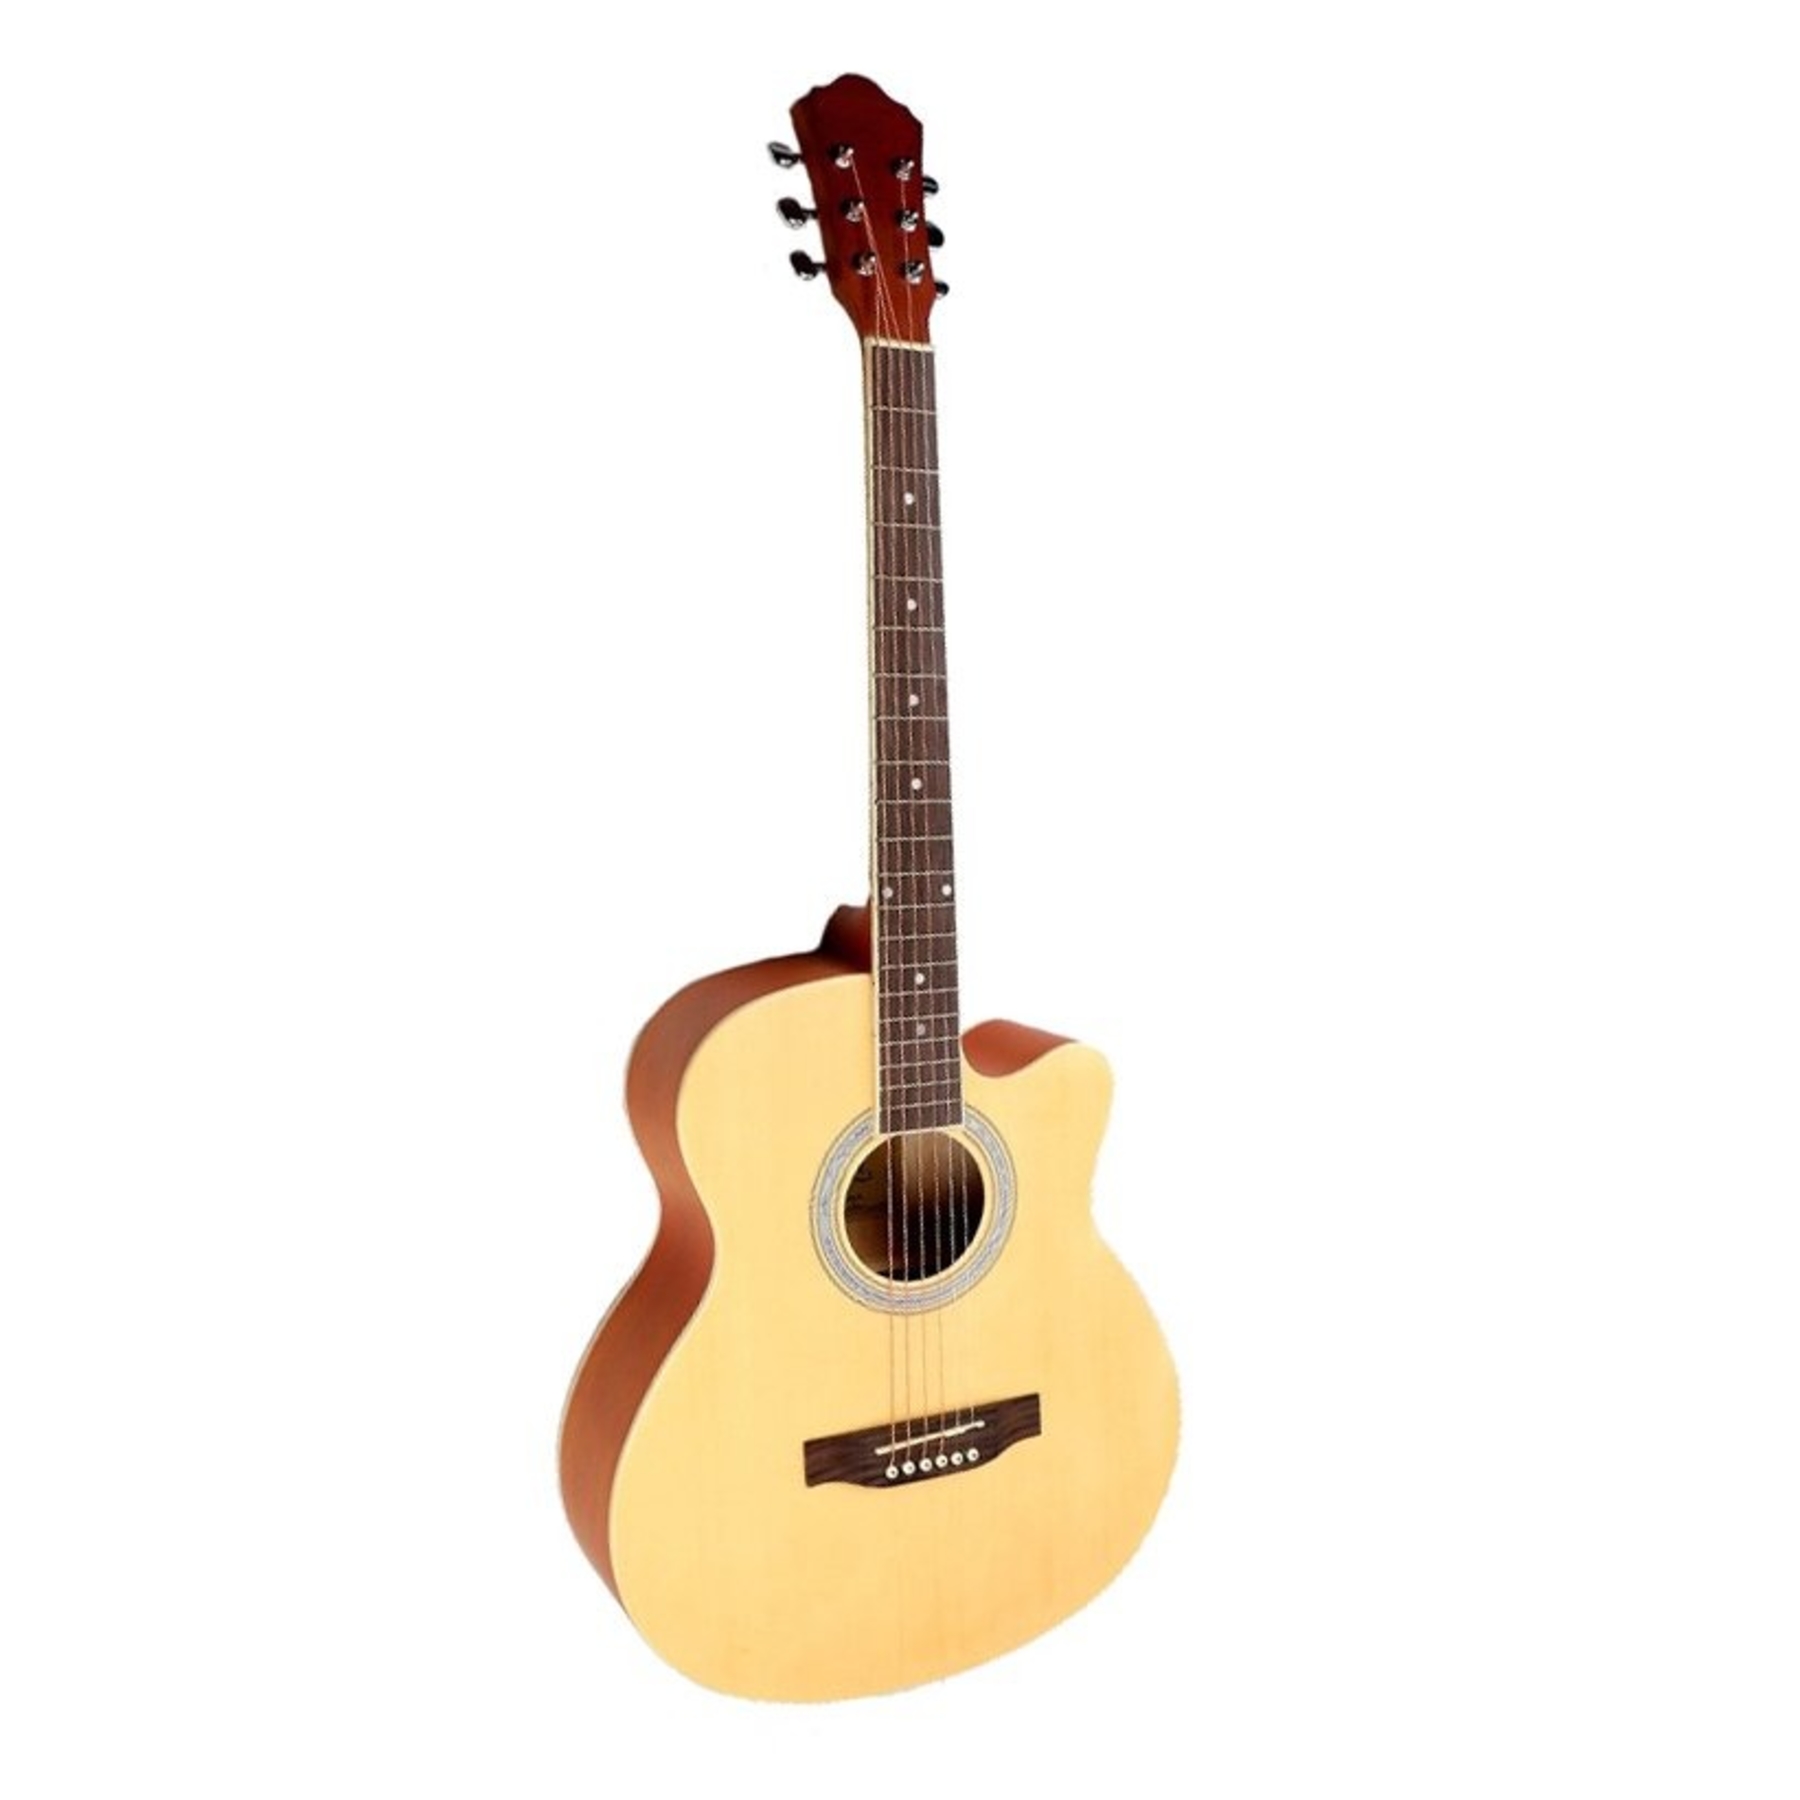 Акустические гитары Caravan K-4040 N гитара акустическая дерево 97см с вырезом